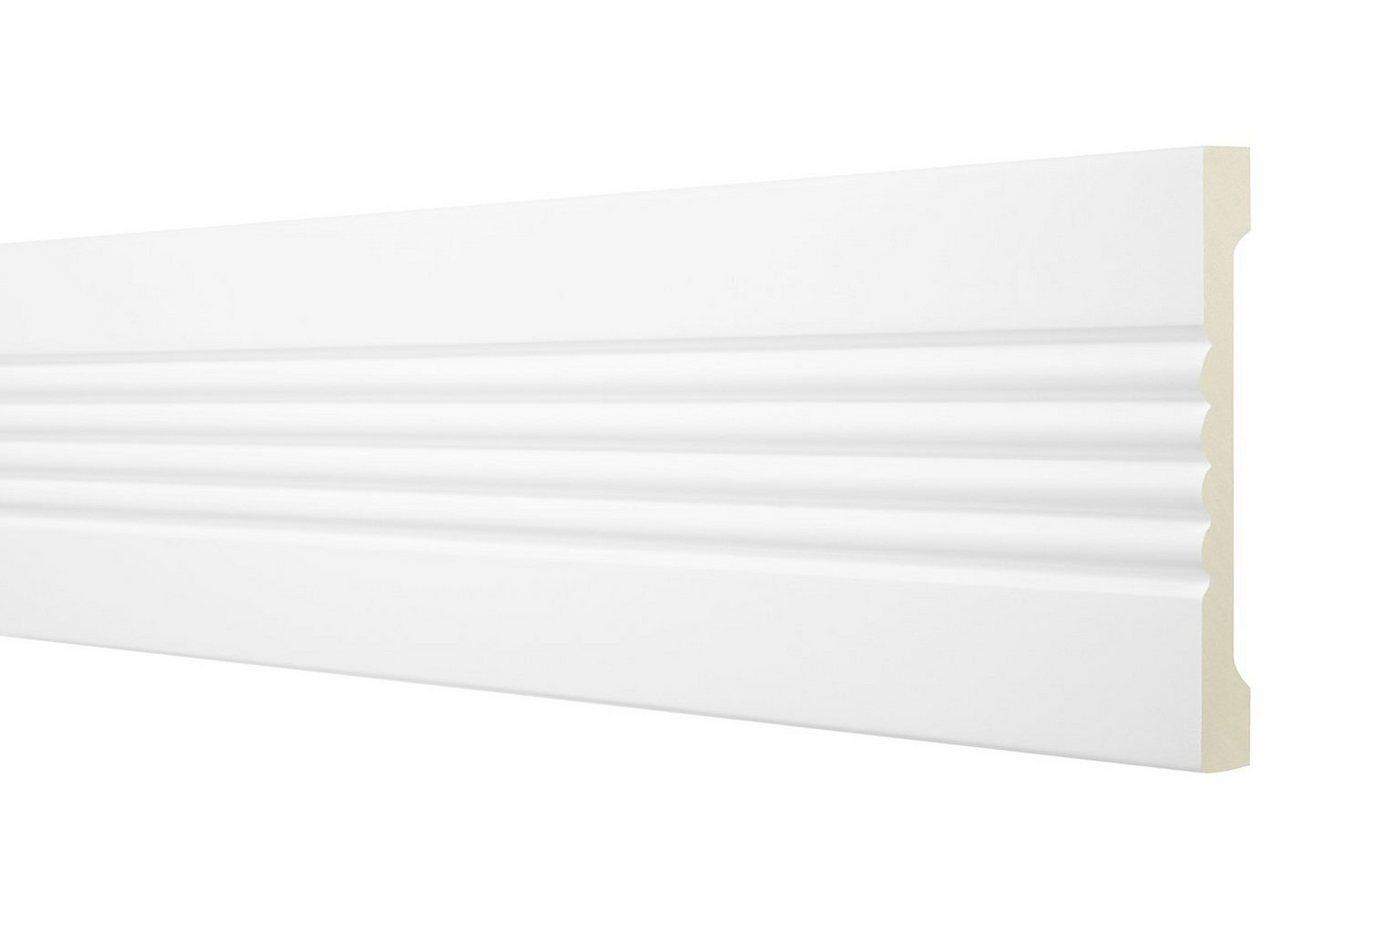 Hexim Perfect Stuckleiste AD 356, Flachleiste aus PU Serie 1 - Stuckleiste glatt, weißes Zierprofil, hart & stoßfest - Wandleiste vorgrundiert von Hexim Perfect